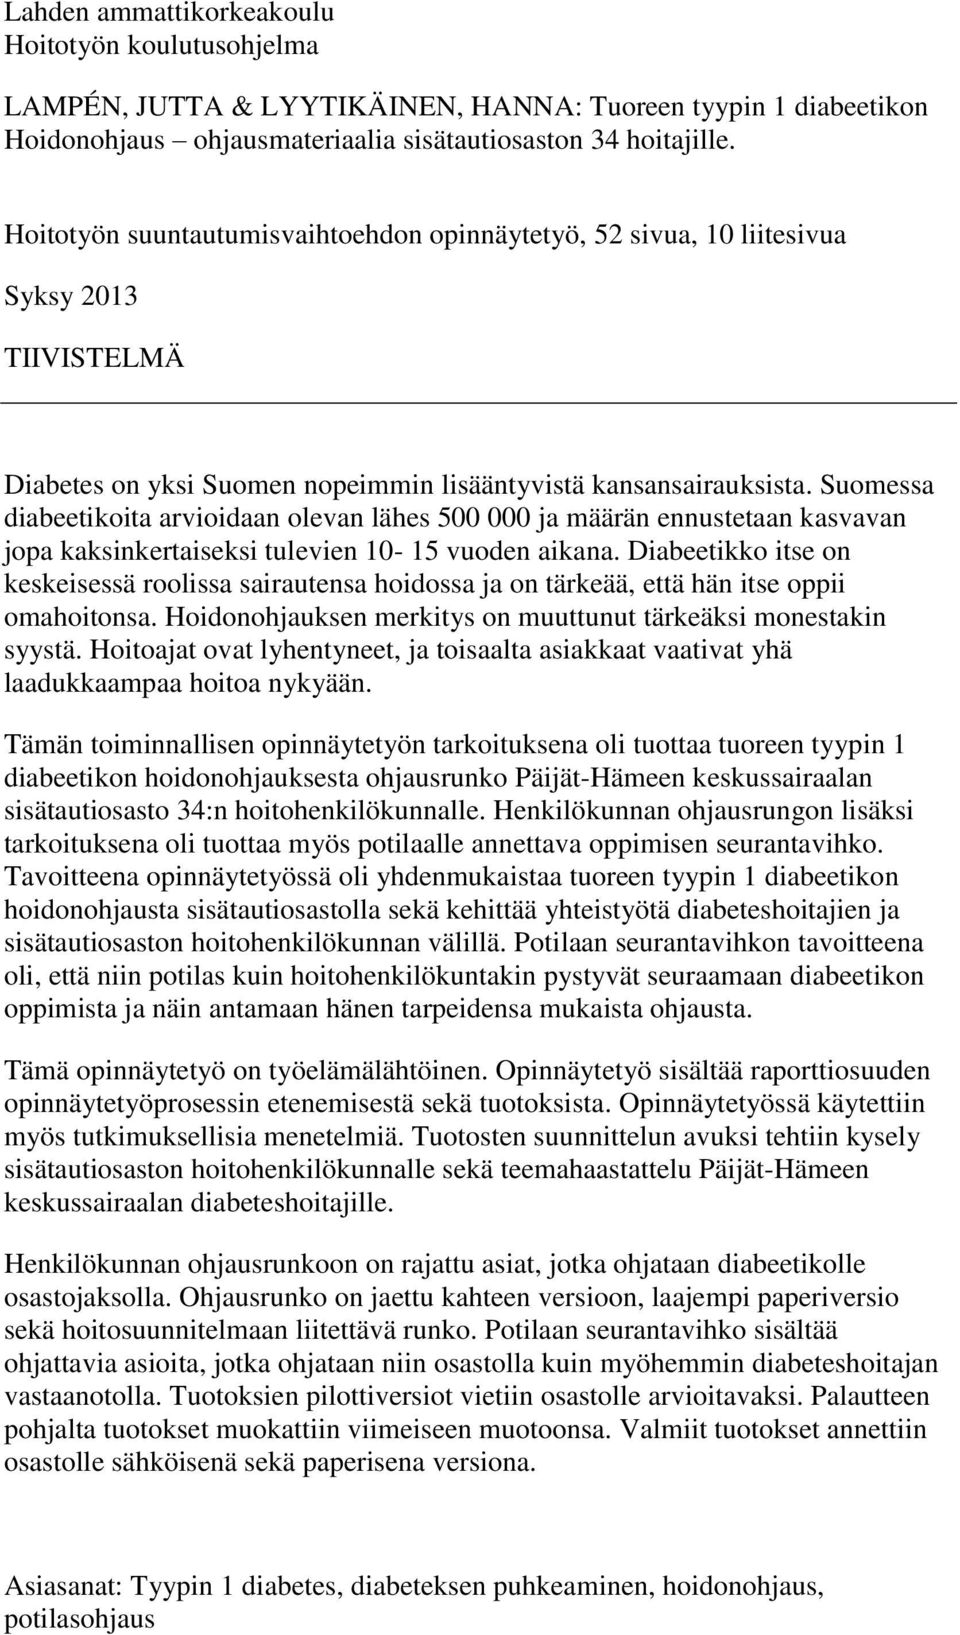 Suomessa diabeetikoita arvioidaan olevan lähes 500 000 ja määrän ennustetaan kasvavan jopa kaksinkertaiseksi tulevien 10-15 vuoden aikana.